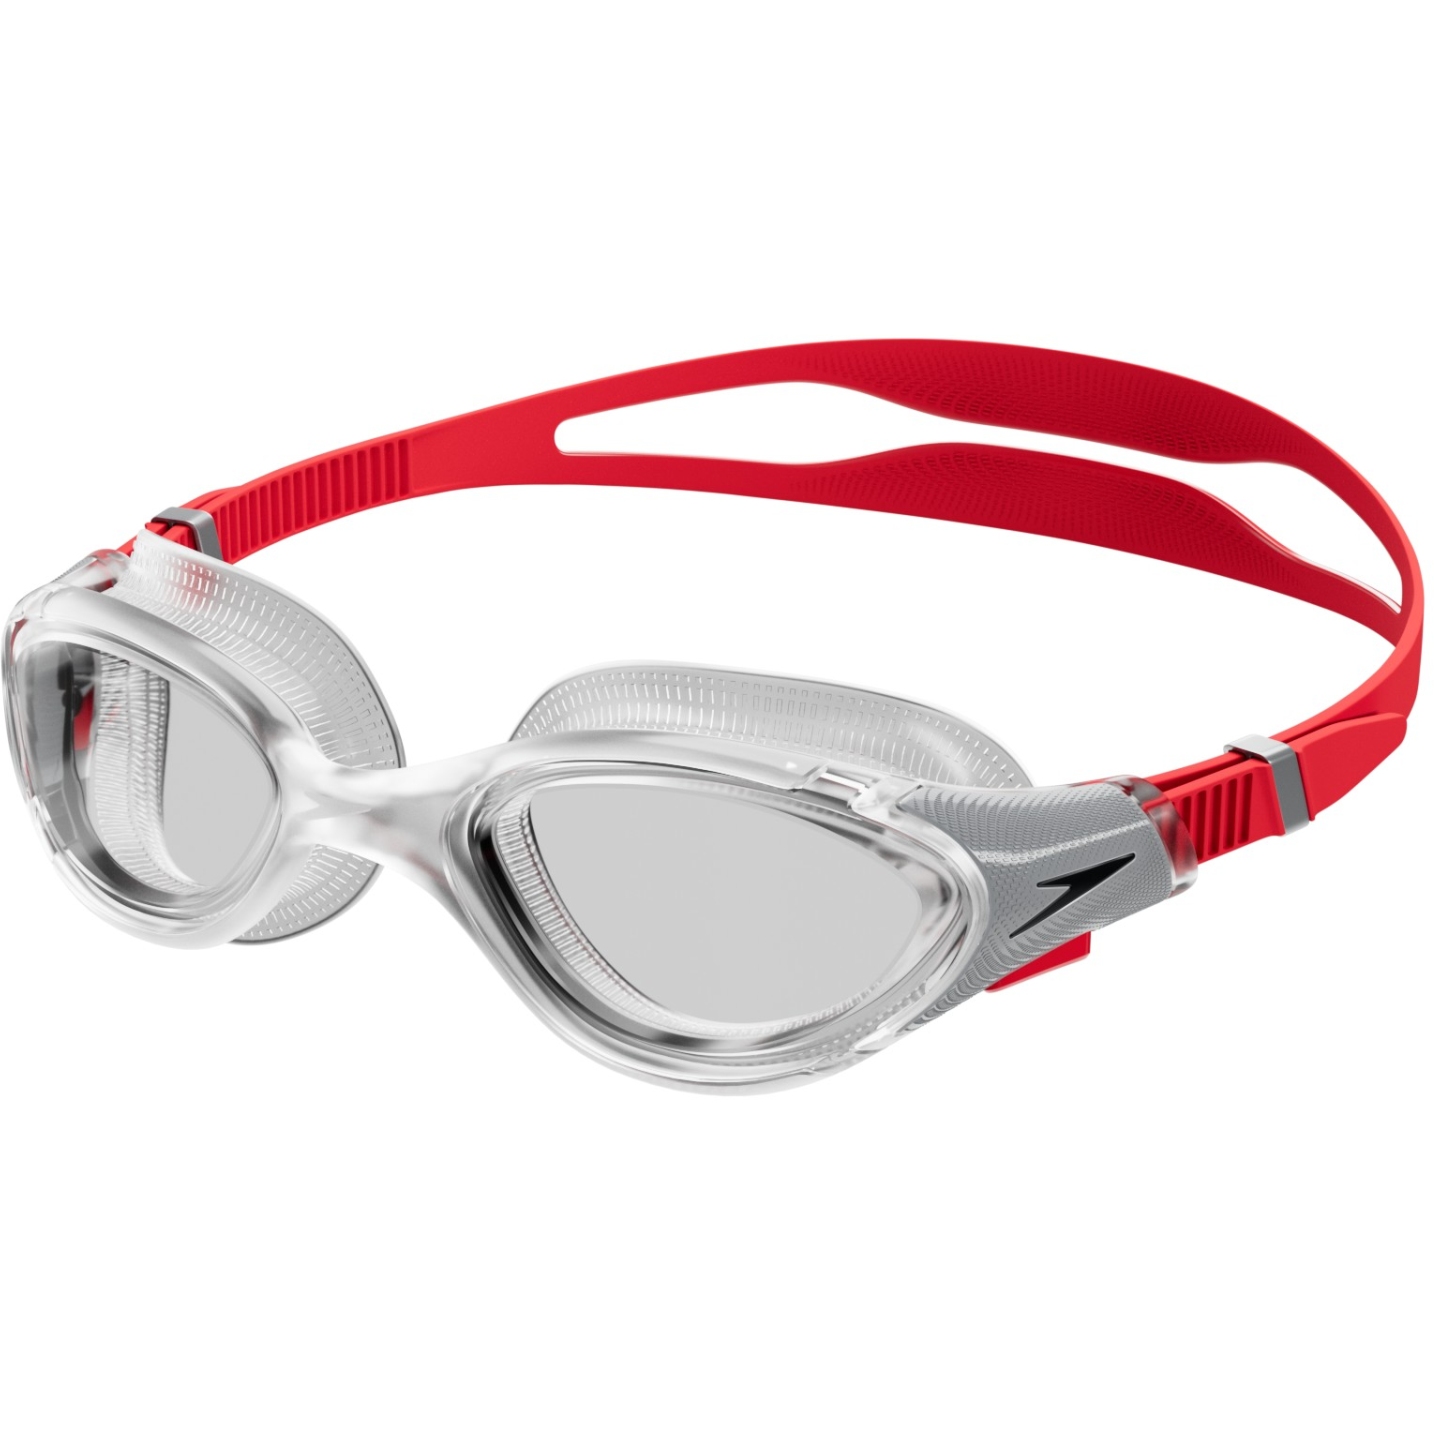 Produktbild von Speedo Futura Biofuse Flexiseal Schwimmbrille - fed red/silver/clear